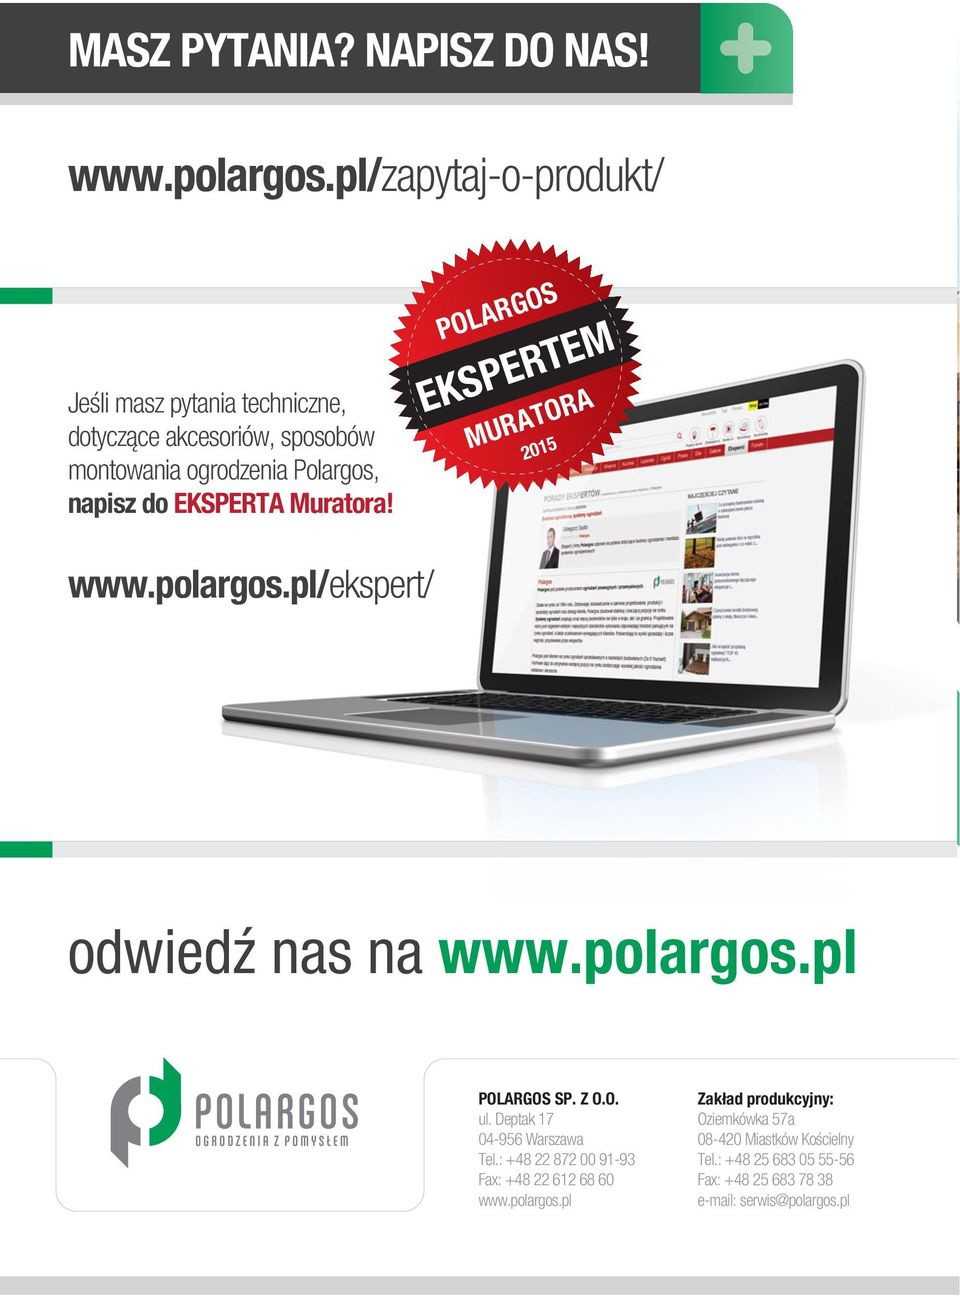 EKSPERTA Muratora! POLARGOS EKSPERTEM MURATORA 2015 www.polargos.pl/ekspert/ odwiedź nas na www.polargos.pl POLARGOS SP. Z O.O. ul.